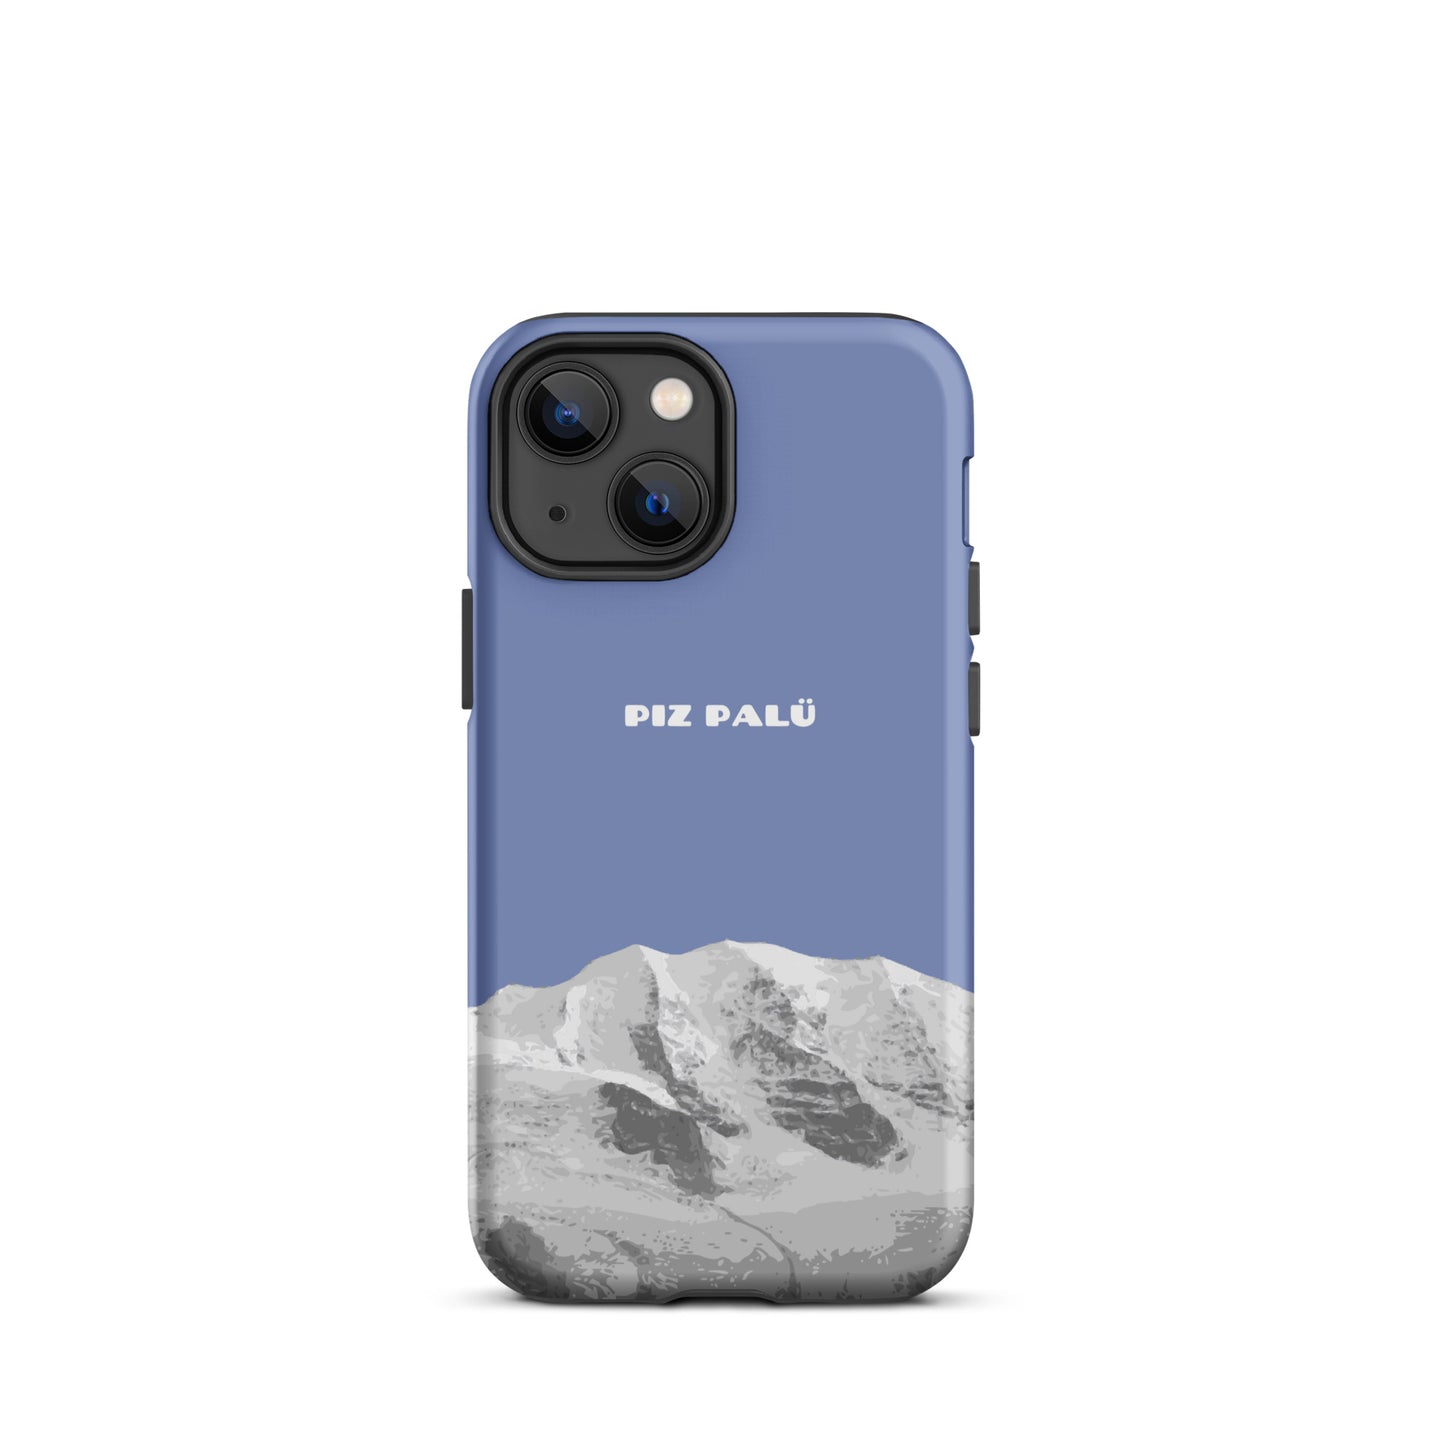 Hülle für das iPhone 13 Mini von Apple in der Farbe Pastellblau, dass den Piz Palü in Graubünden zeigt.